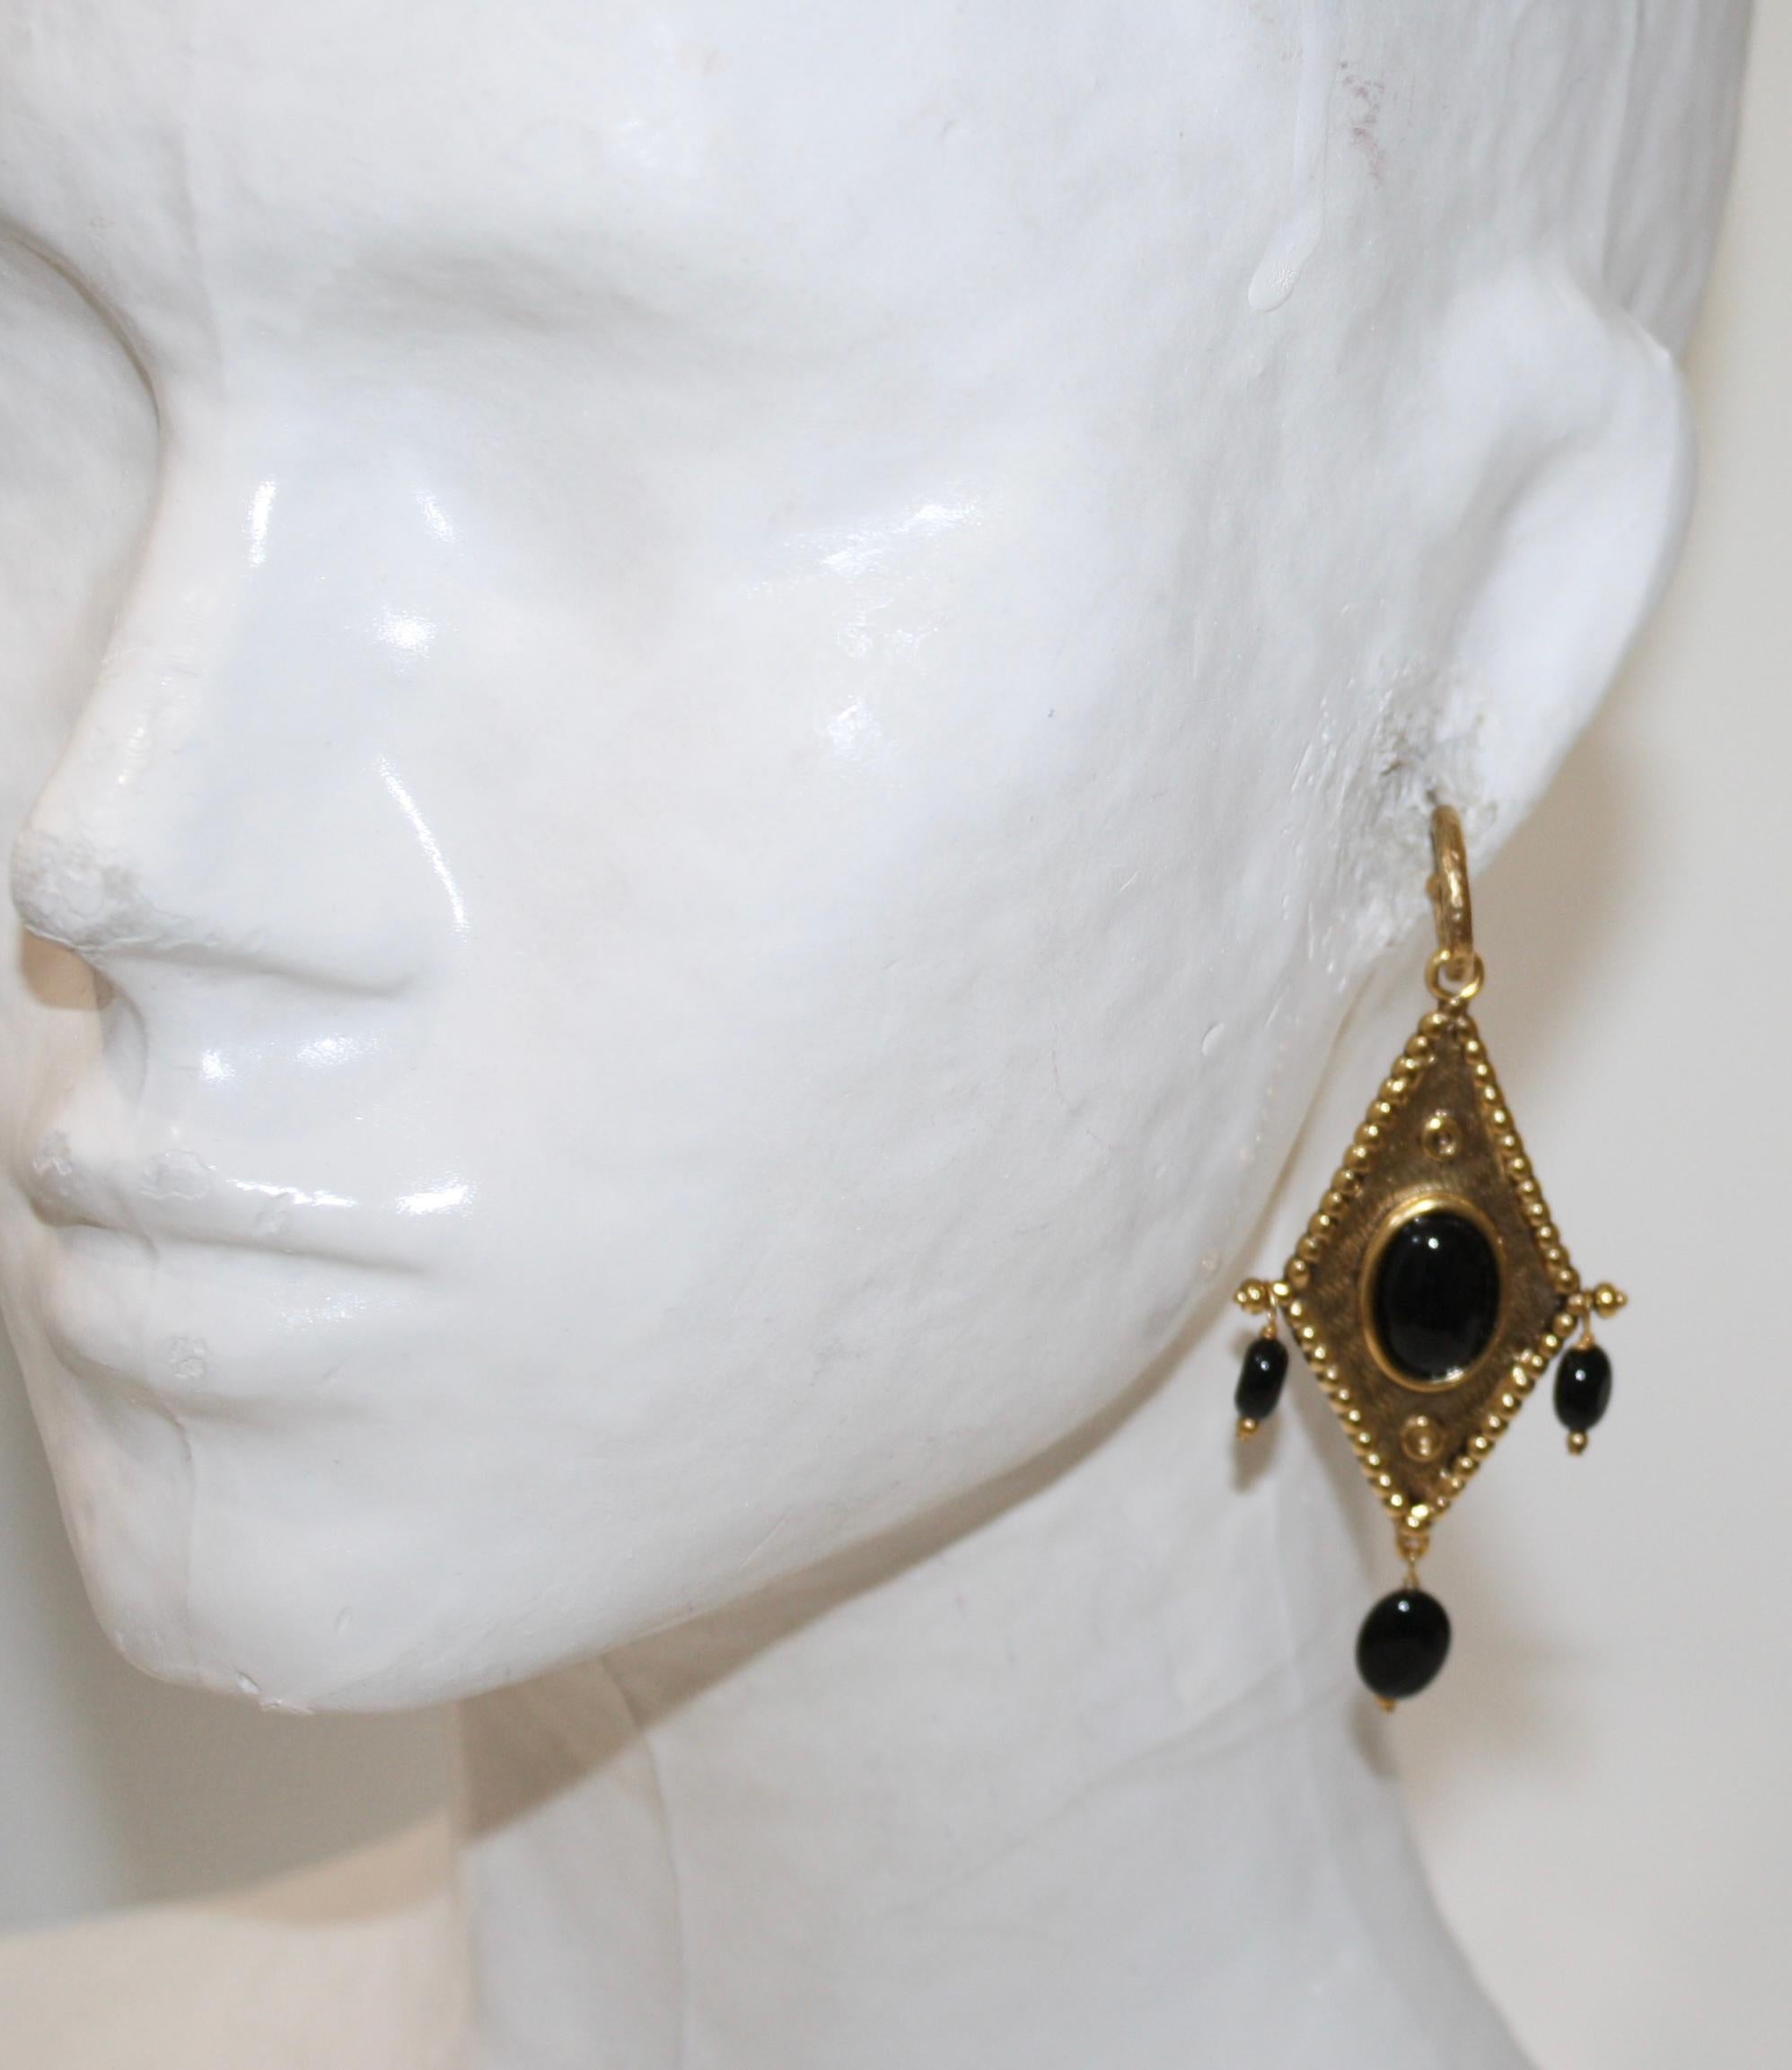 Essaouira 
boucles d'oreilles losanges, percées.

Un thème marocain où les cabochons de Goossens sont revisités en bijoux berbères grâce au laiton doré travaillé de manière brute qui contraste avec les pierres dures et les cristaux de roche plus